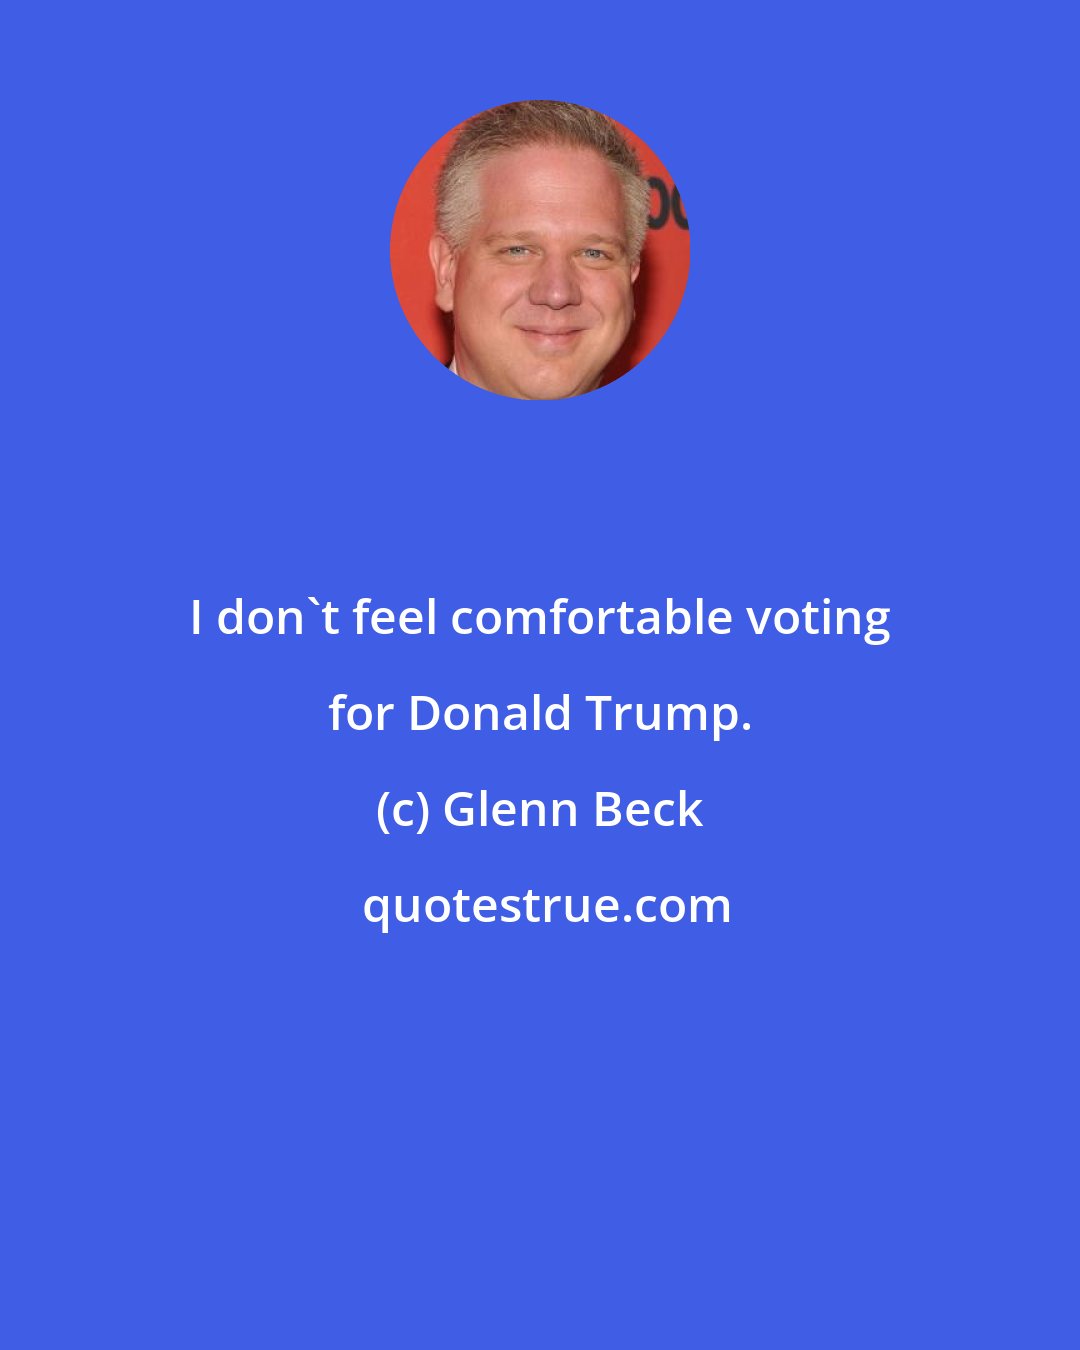 Glenn Beck: I don't feel comfortable voting for Donald Trump.